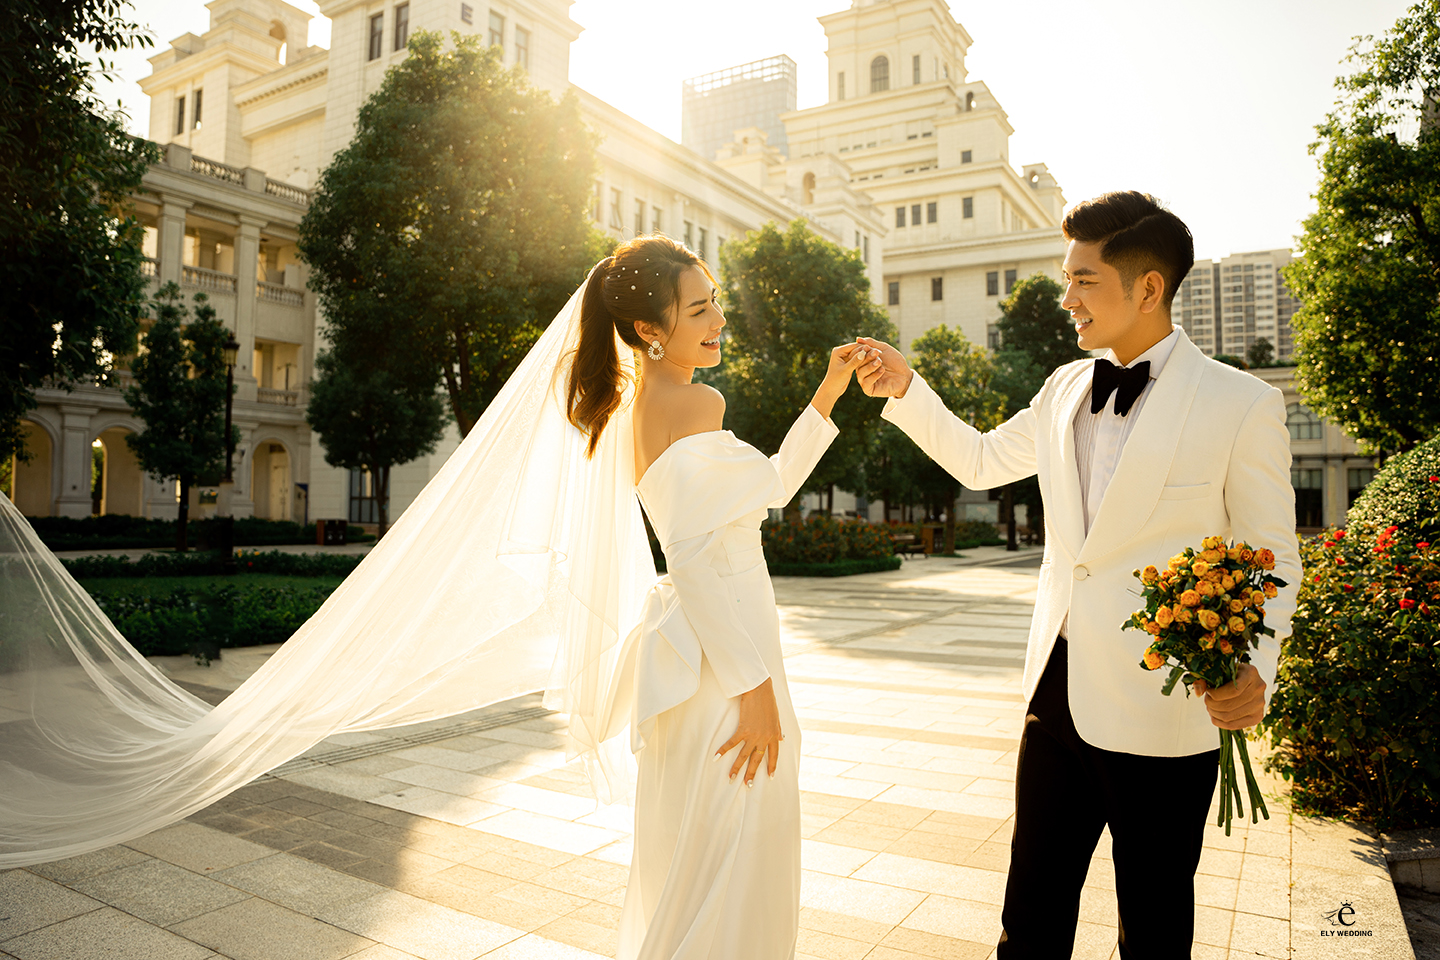 Ely Wedding: Dịch Vụ Chụp Ảnh Cưới Uy Tín Tại Hà Nội